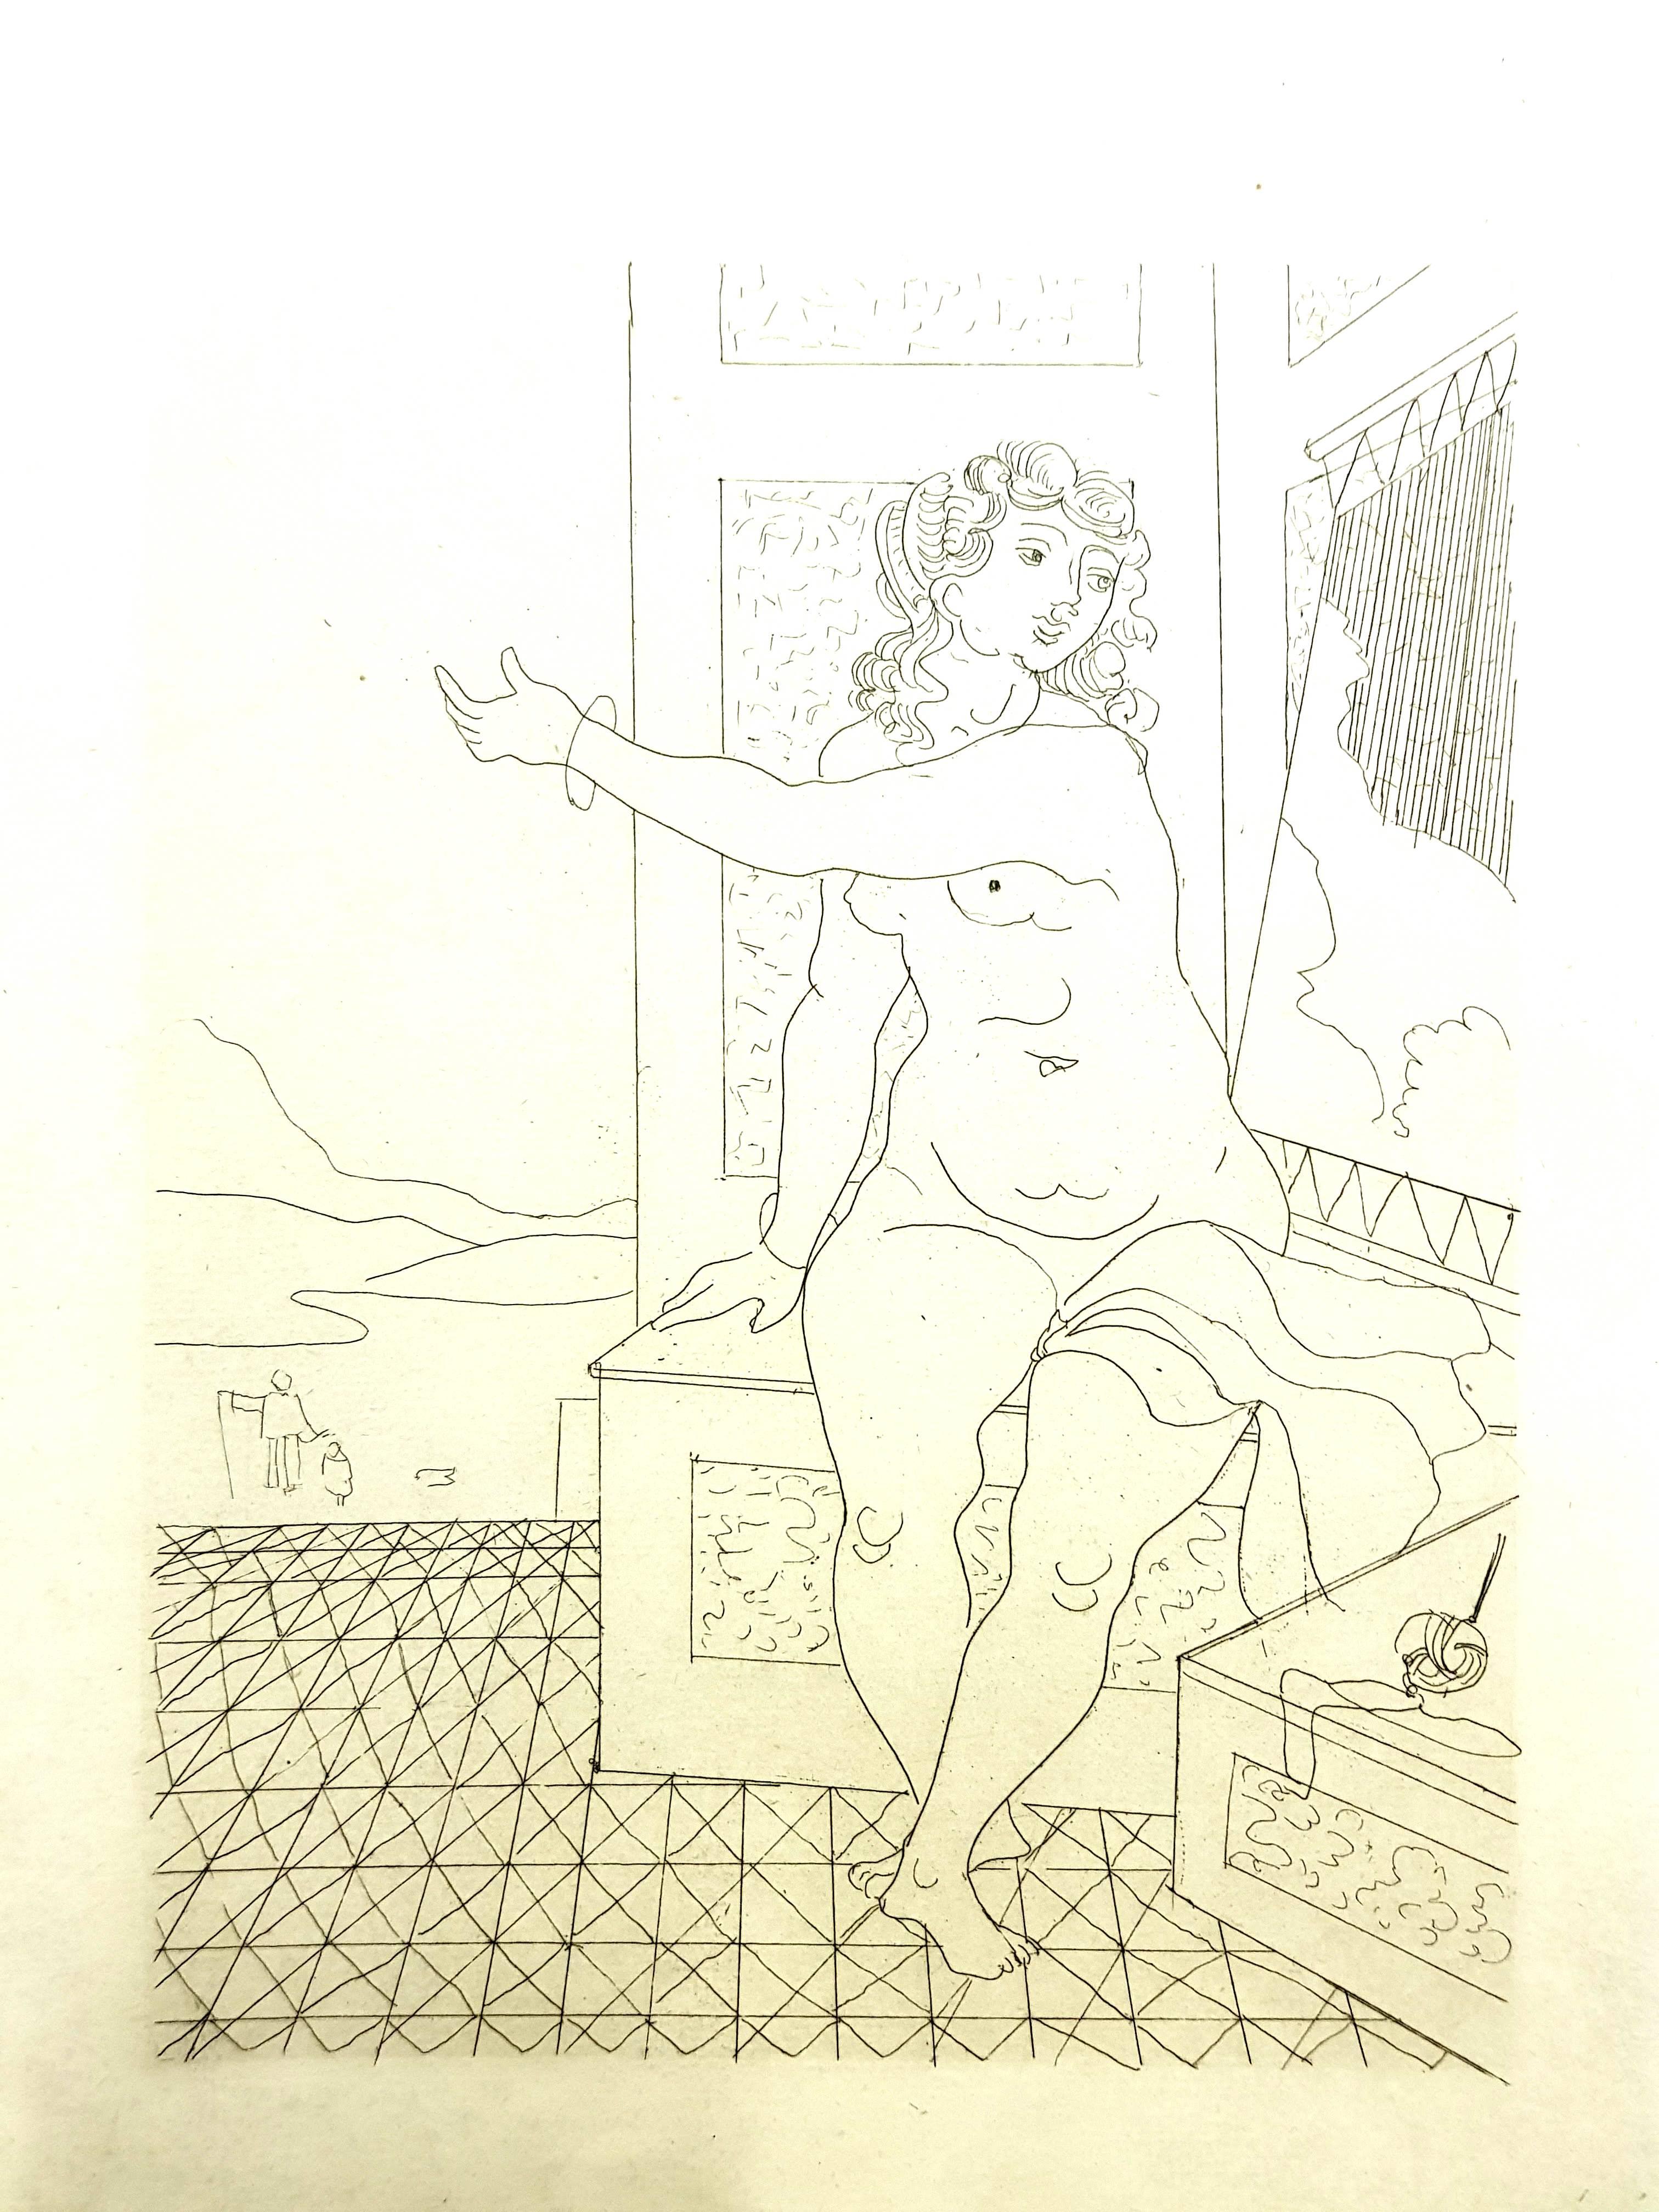 André Derain - Ovids Heroides 
Original-Radierung
Auflage von 134
Abmessungen: 32 x 25 cm
Ovide [Marcel Prevost], Héroïdes, Paris, Société des Cent-une, 1938

Andre Derain wurde 1880 in Chatou, einer Künstlerkolonie außerhalb von Paris, geboren. Im